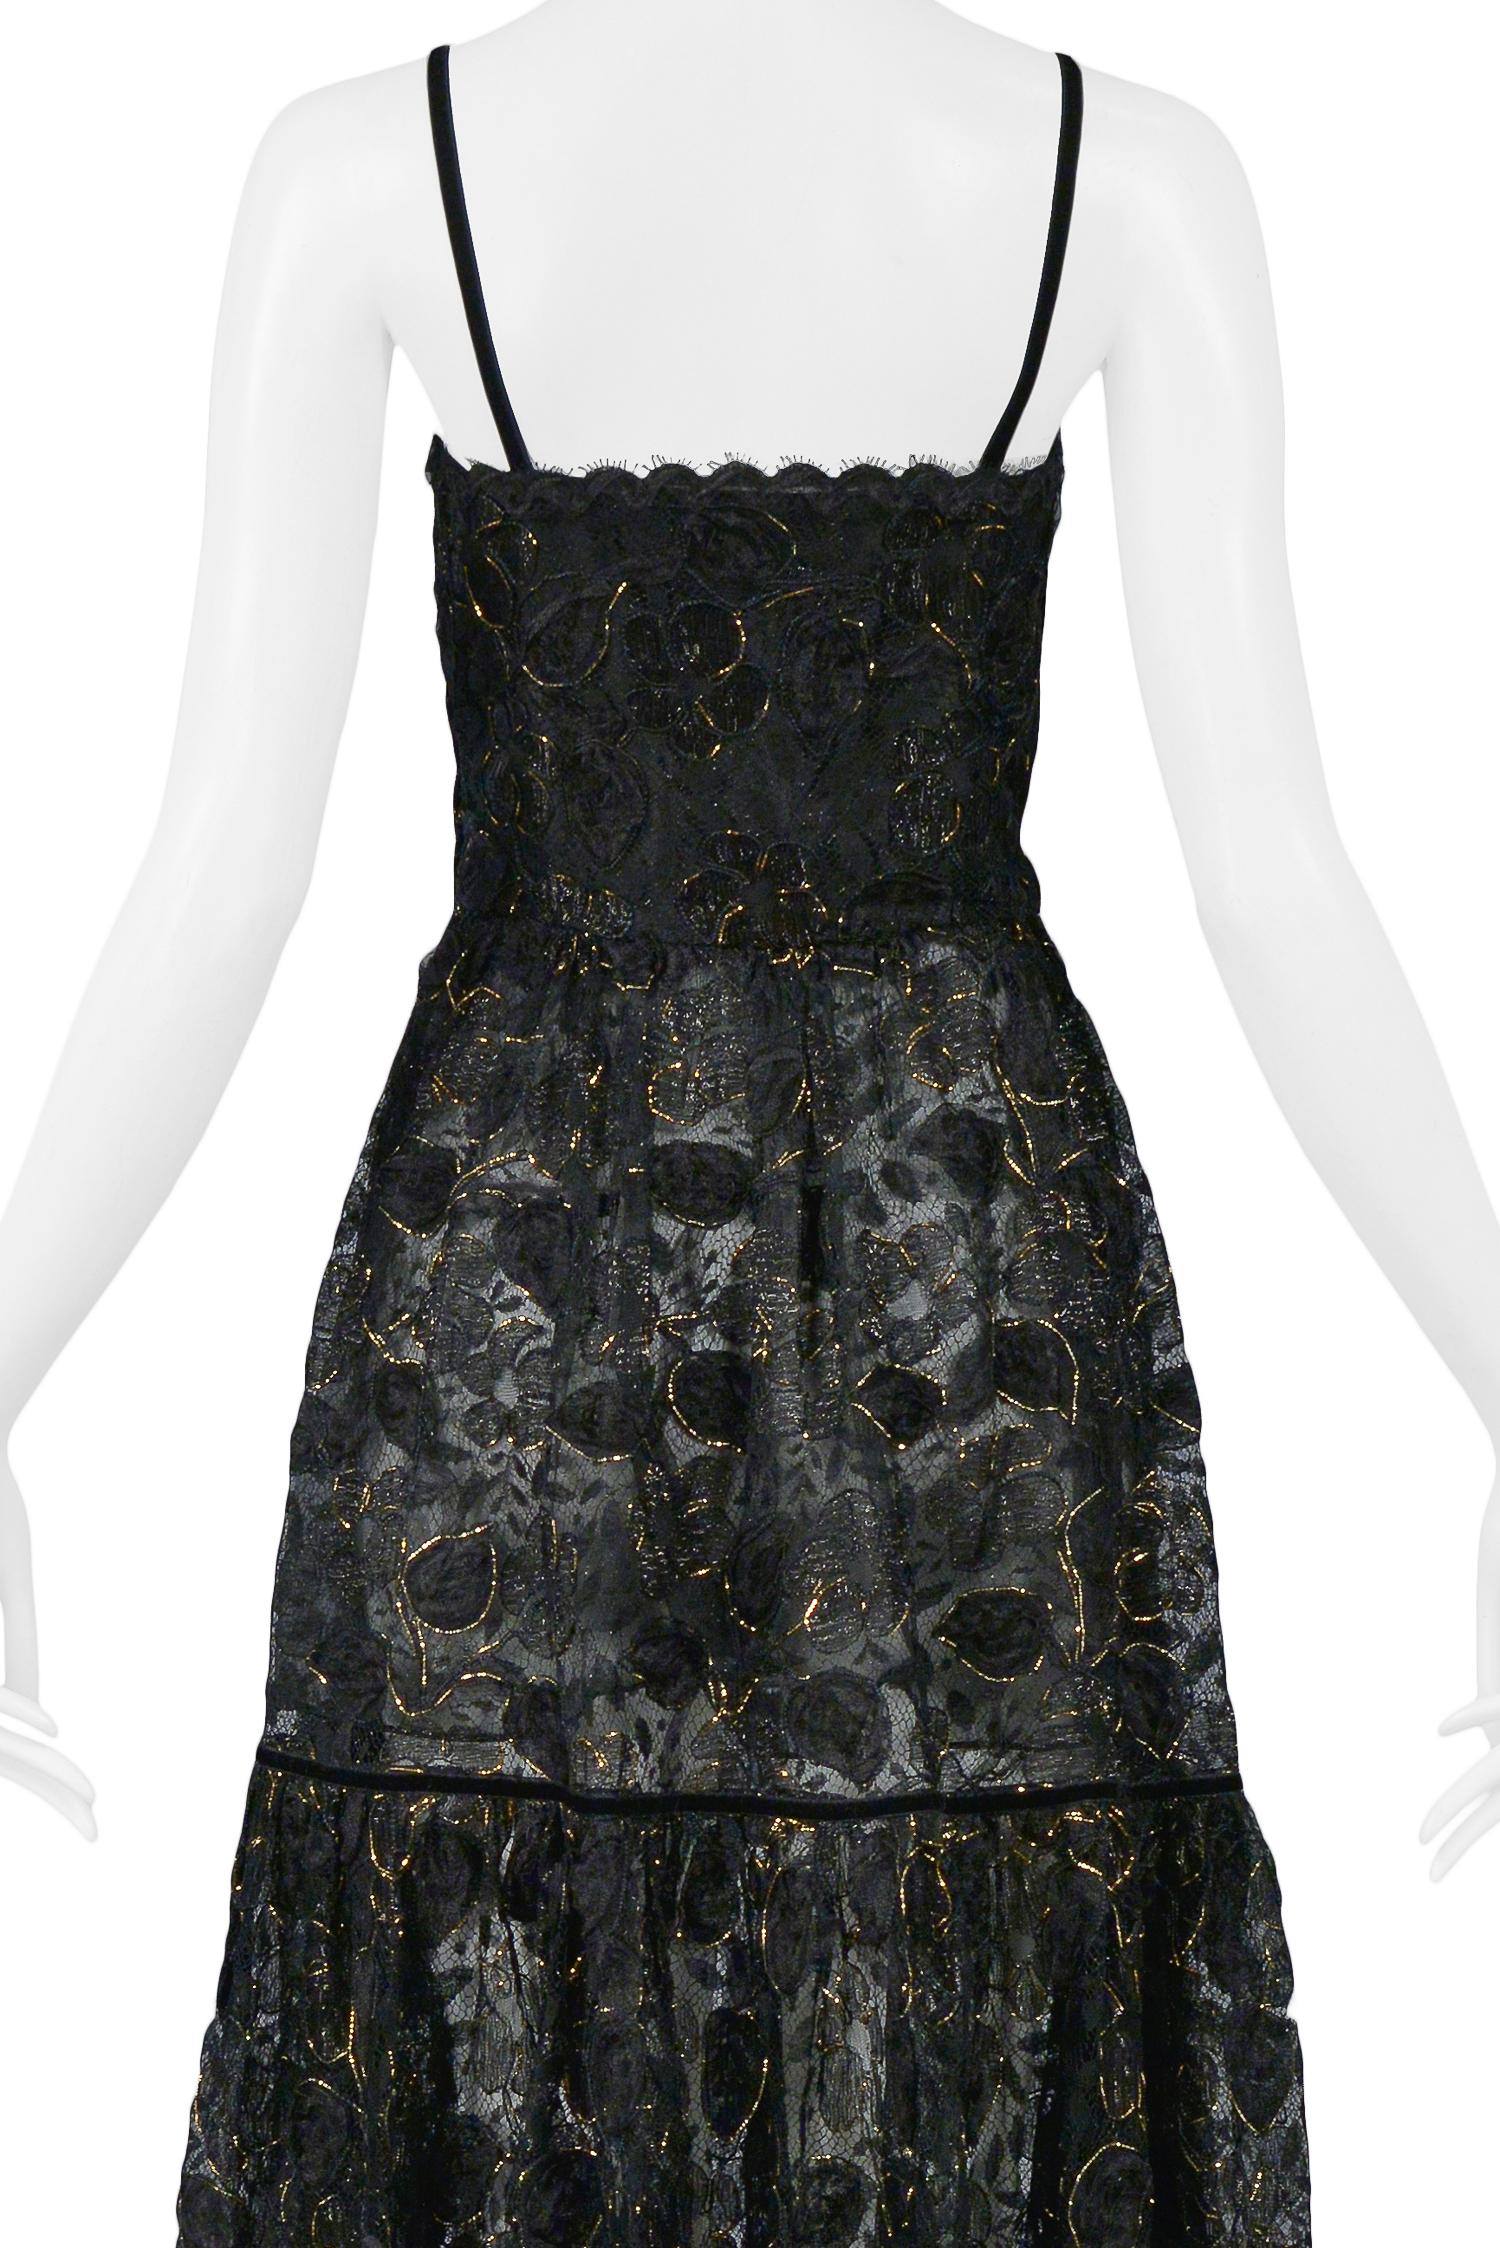 Women's Vintage Yves Saint Laurent Black Lace & Gold Thread Evening Gown